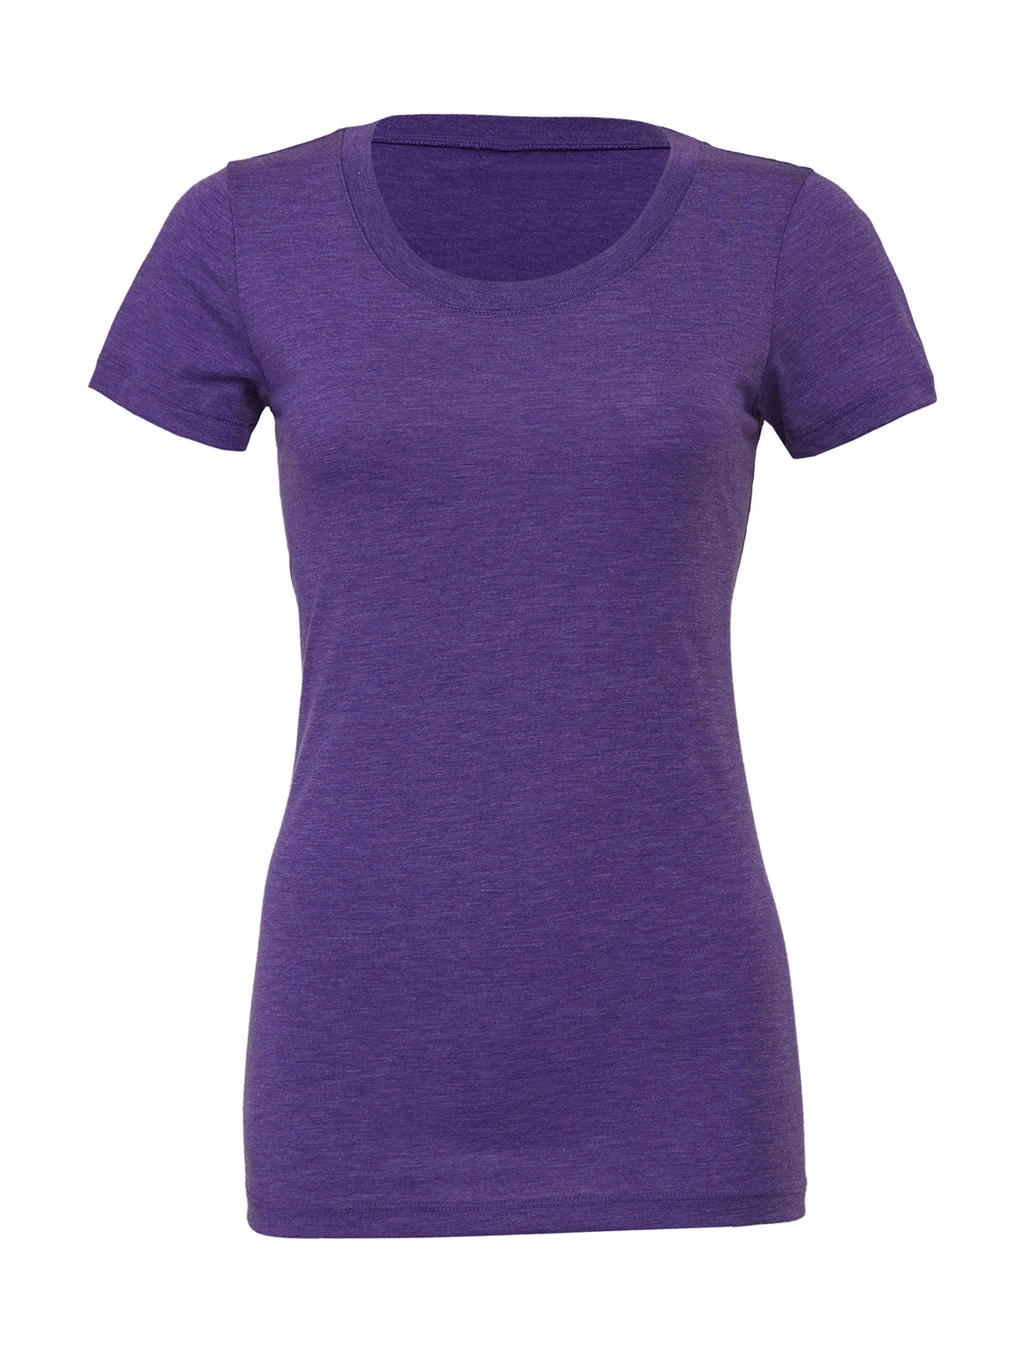 Triblend Crew Neck T-Shirt zum Besticken und Bedrucken in der Farbe Purple Triblend mit Ihren Logo, Schriftzug oder Motiv.